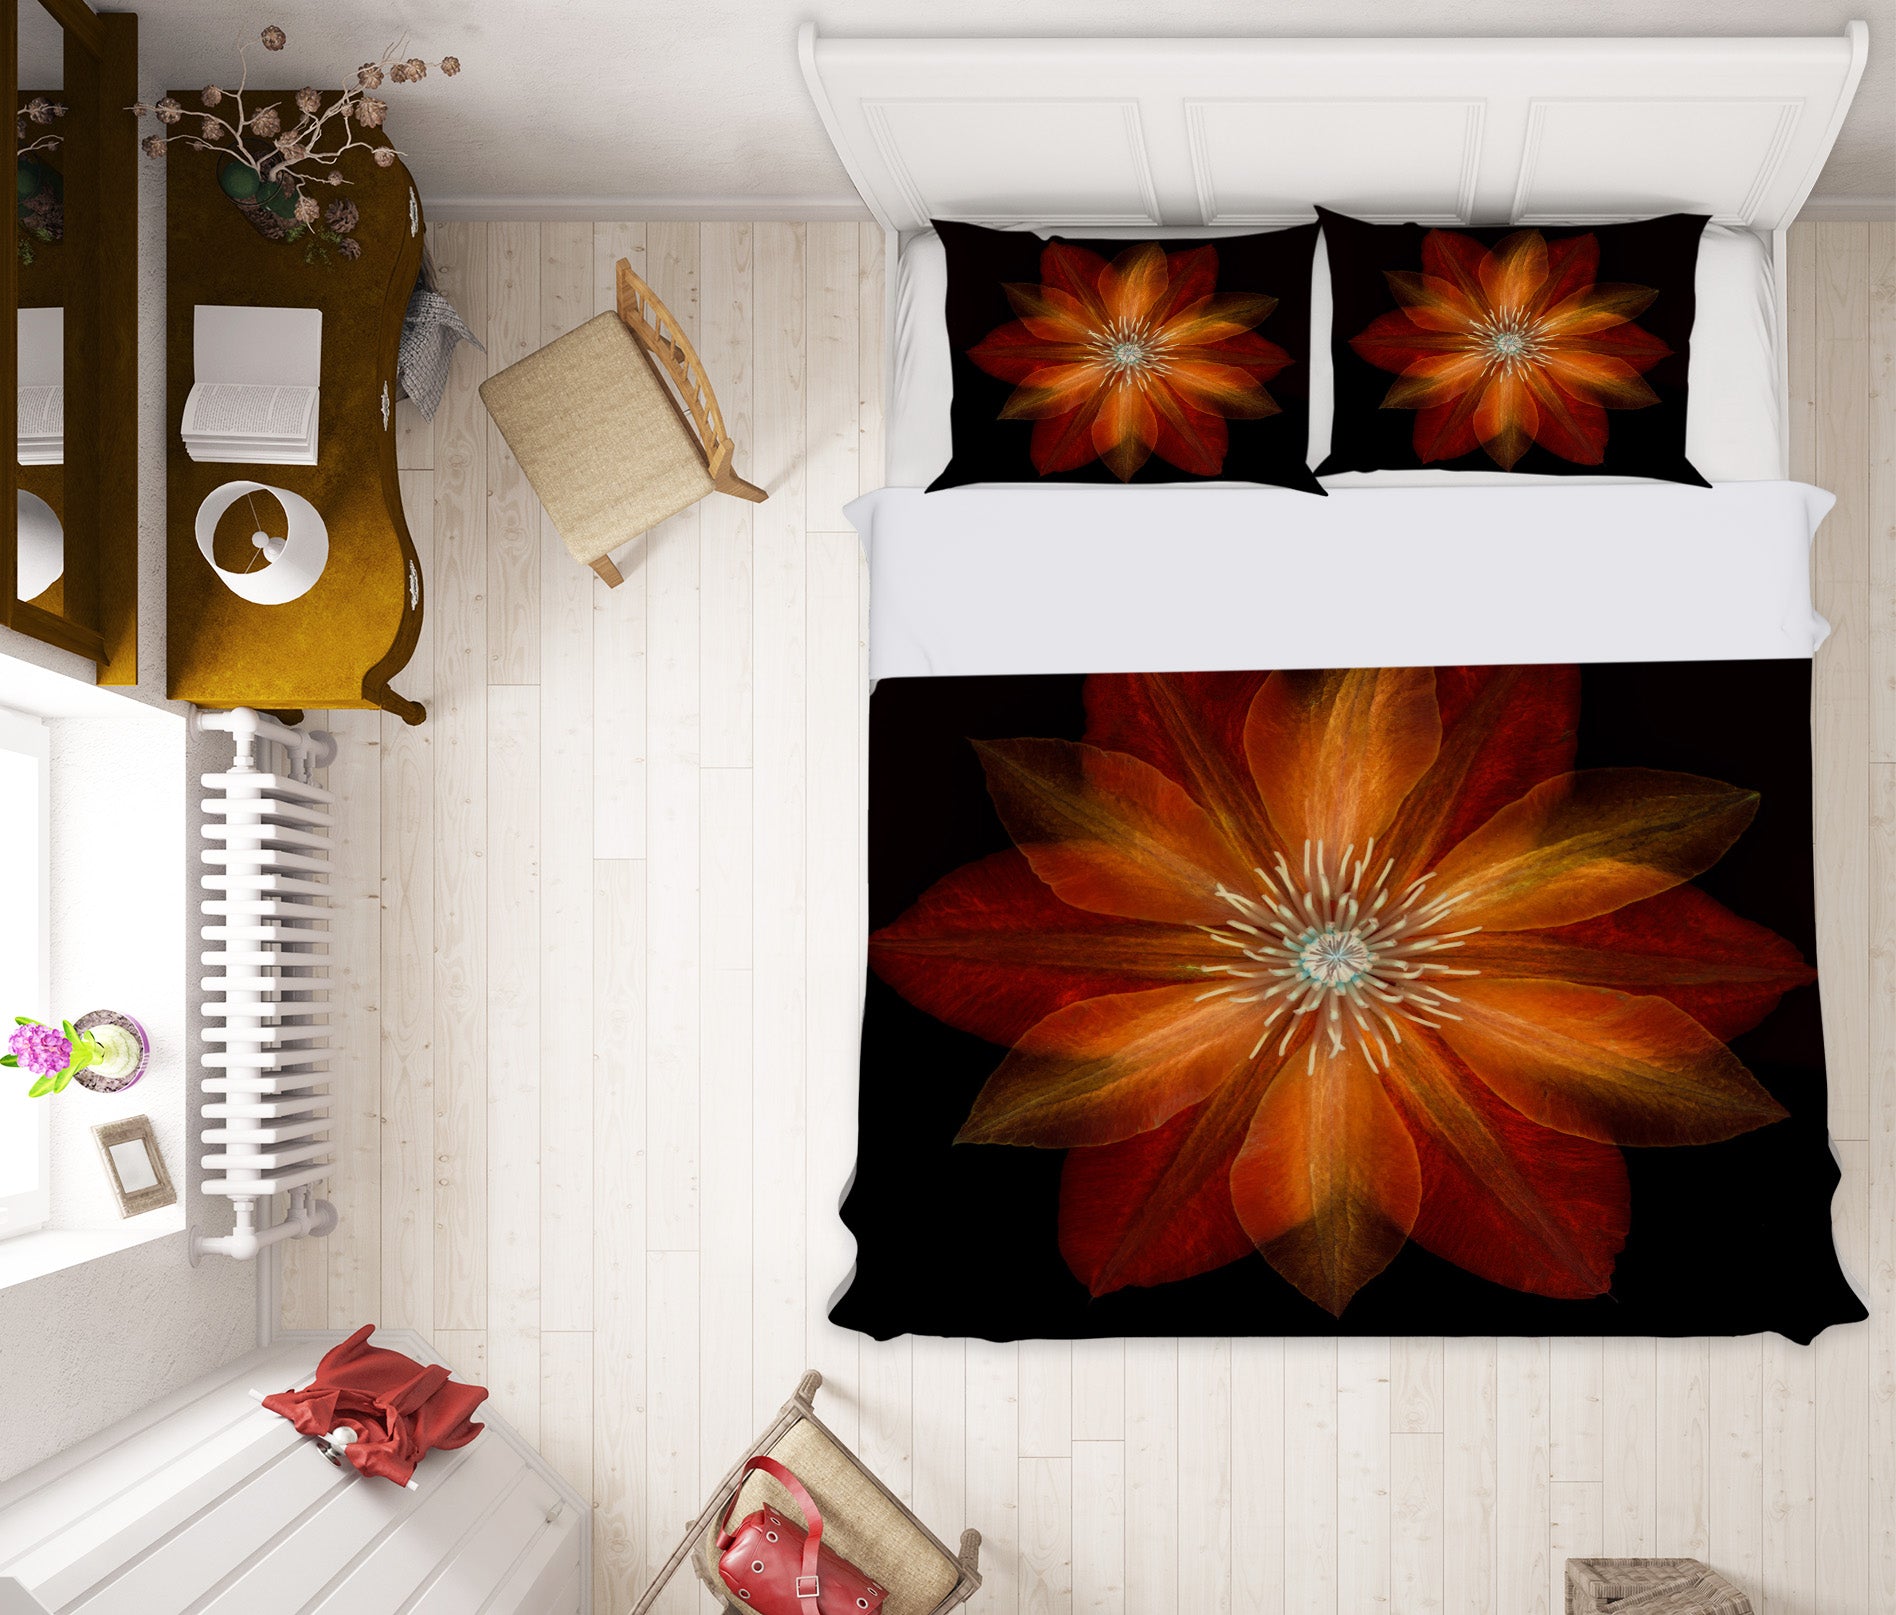 3D Fire Red Flower 2015 Assaf Frank Bedding Bed Pillowcases Quilt